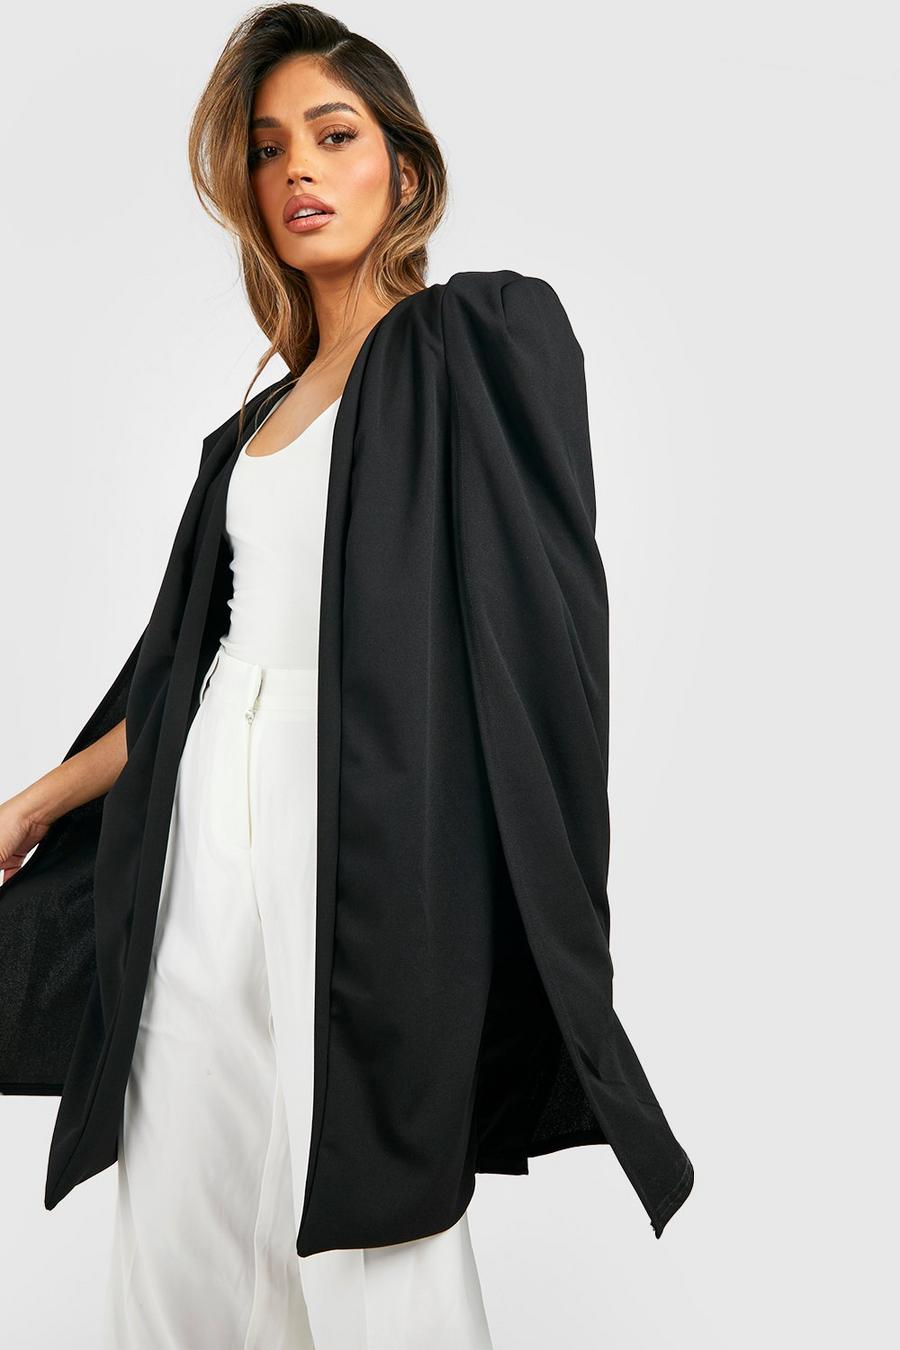 Veste légère longue style cape en tissu crêpe, Noir schwarz